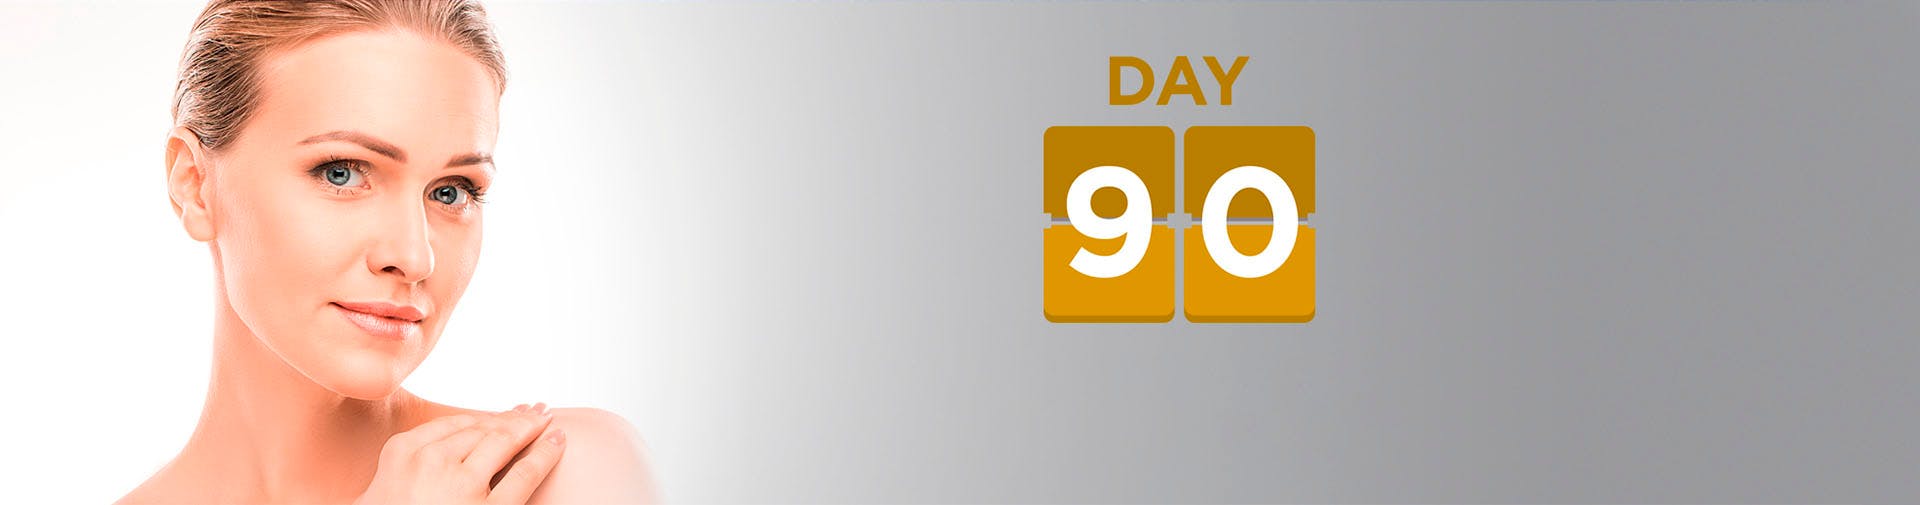 90 day challenge banner